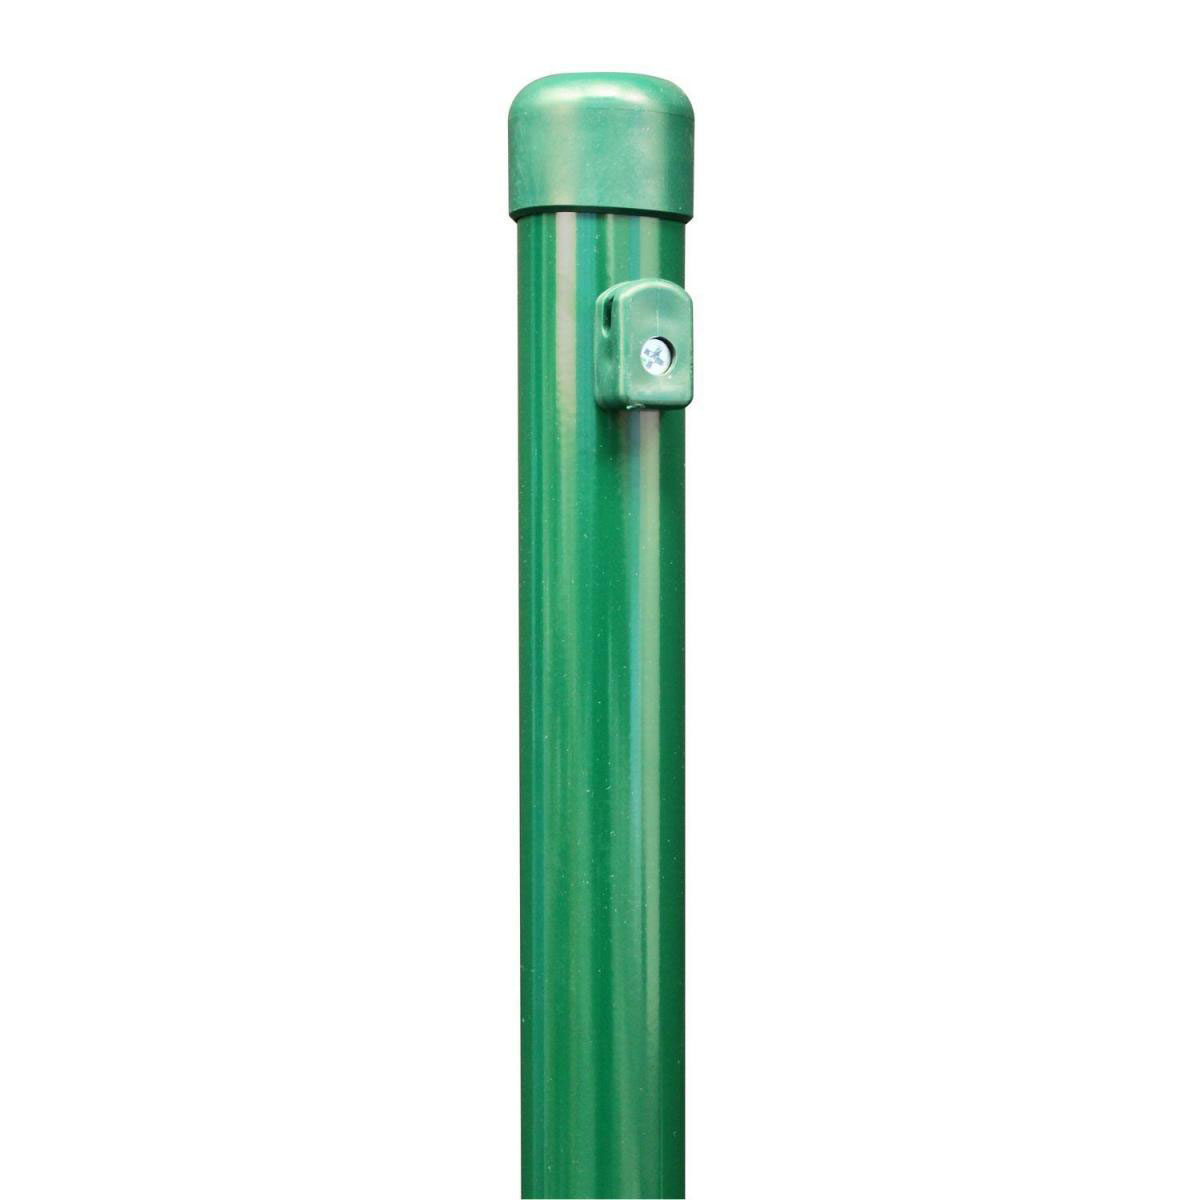 Zaunpfosten für Maschendraht, grün, Stärke 34 mm für Geflechthöhe 800 mm, Höhe 115 cm